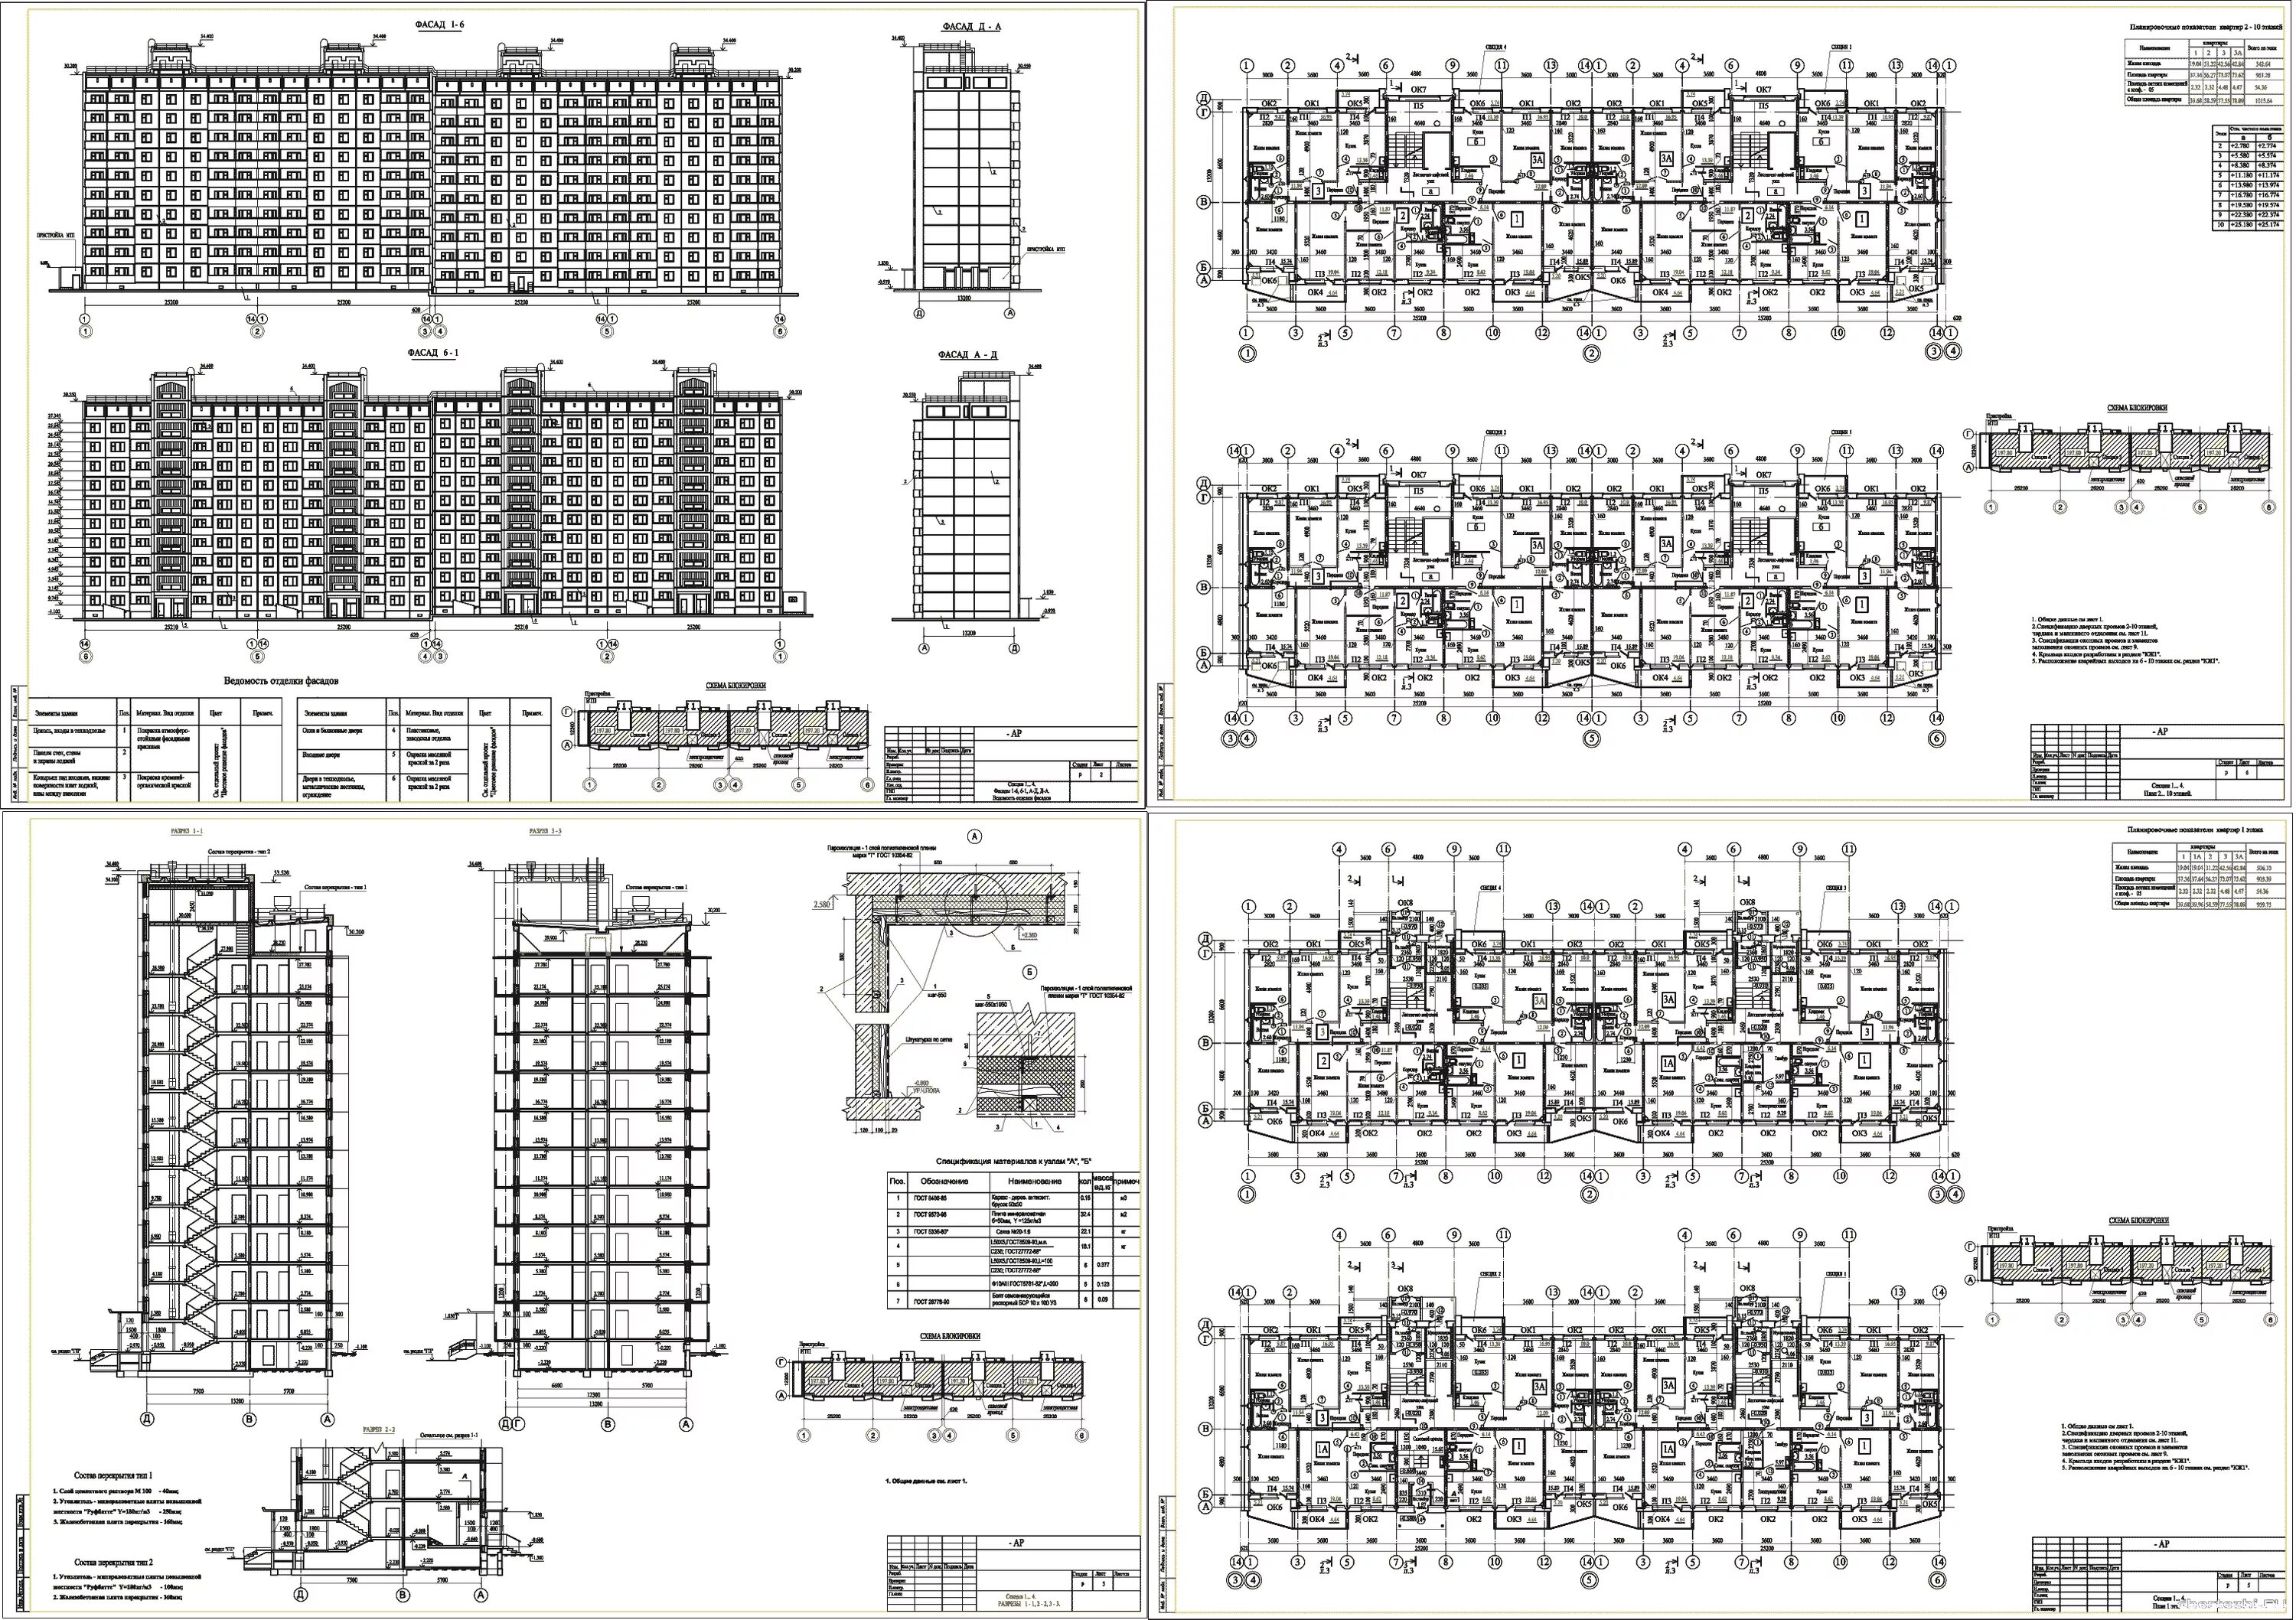 Панельный 10 этажный дом чертеж. Чертежи многоэтажных домов 121. Типы 12 этажных панельных домов. Панельный жилой дом планировка методом ячеек.